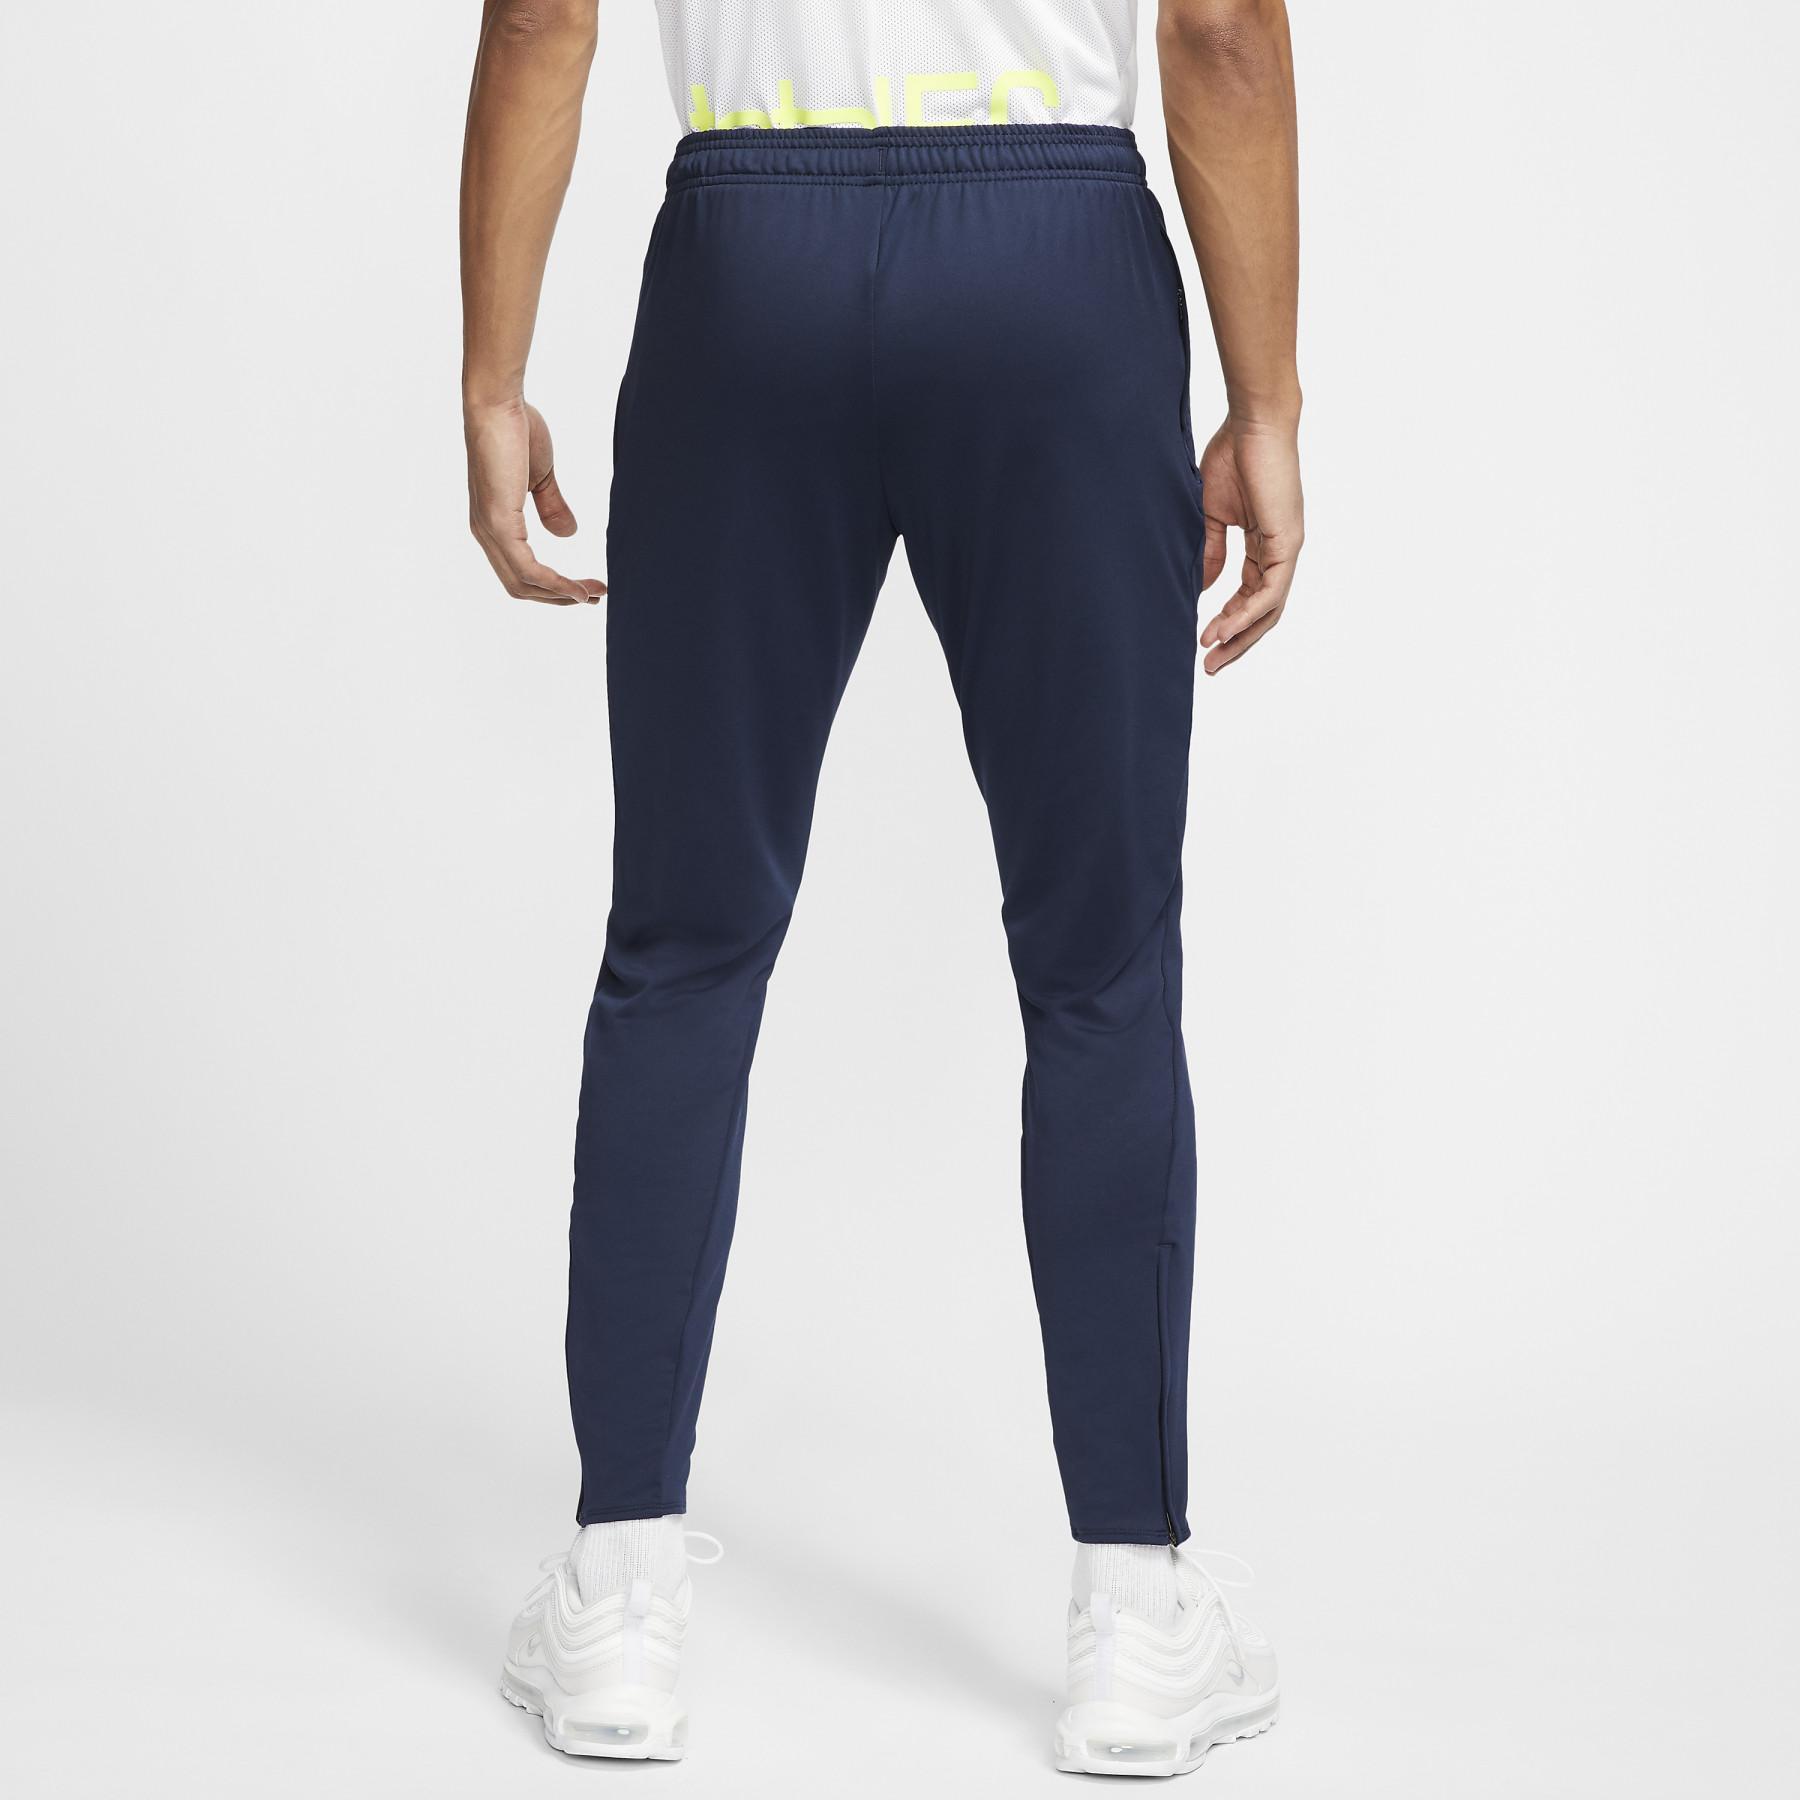 Spodnie Nike F.C. Essential